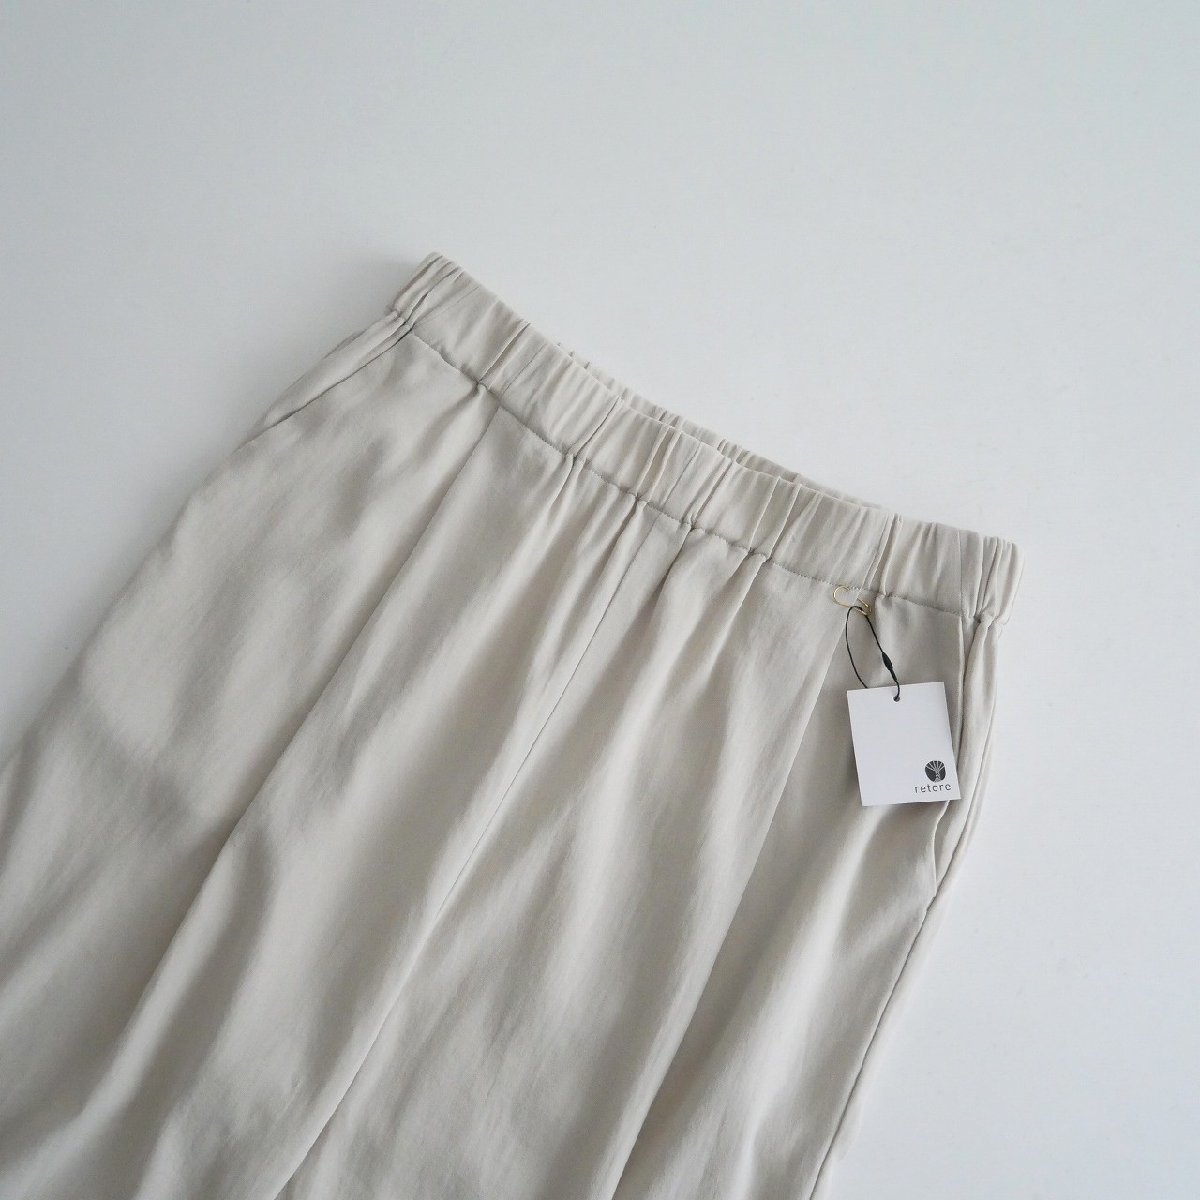 【ご予約品】 エヴァムエヴァ eva evam / 2023 / 2307-1549 / E231T160 / 1 タックパンツ pants tuck cotton Sサイズ